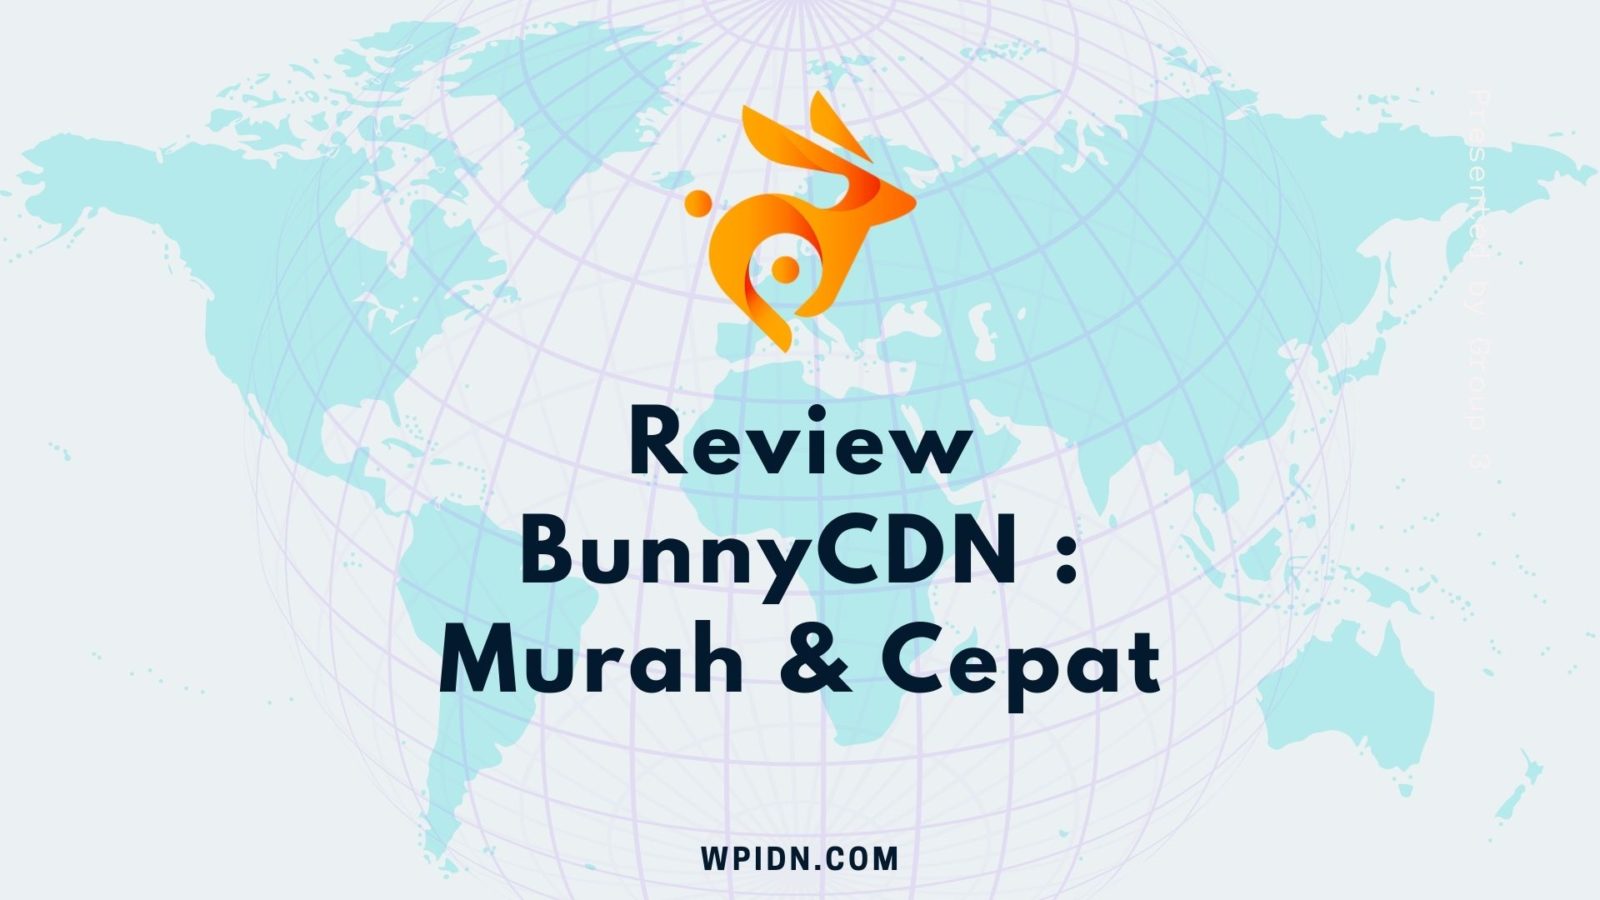 Review BunnyCDN - Murah, Cepat, dan Simpel